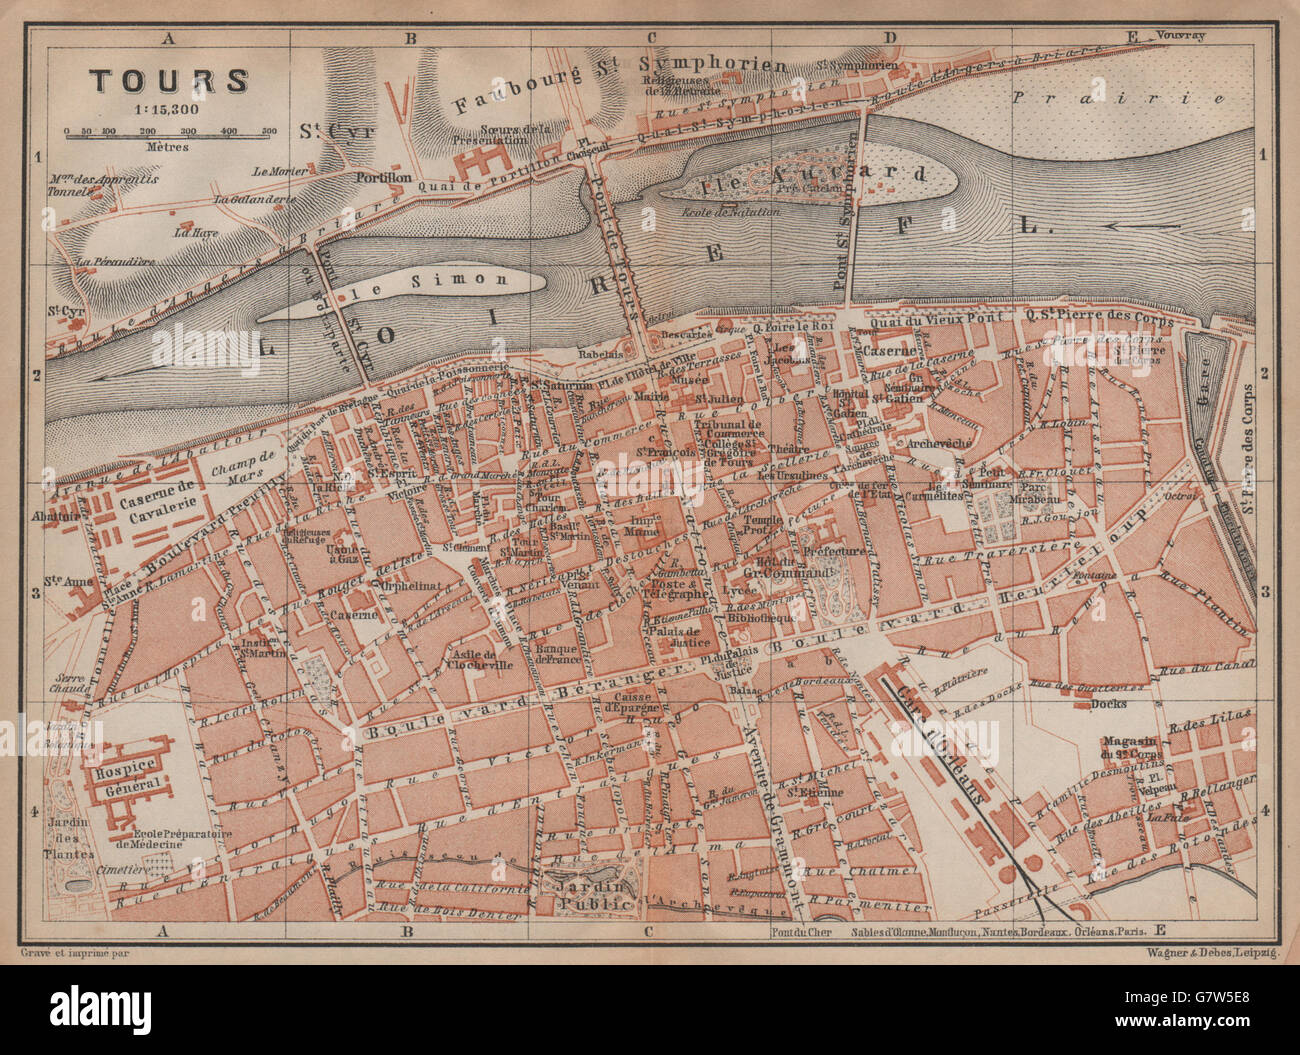 TOURS antique town city plan de la ville. Indre-et-Loire carte, 1899 old  map Stock Photo - Alamy